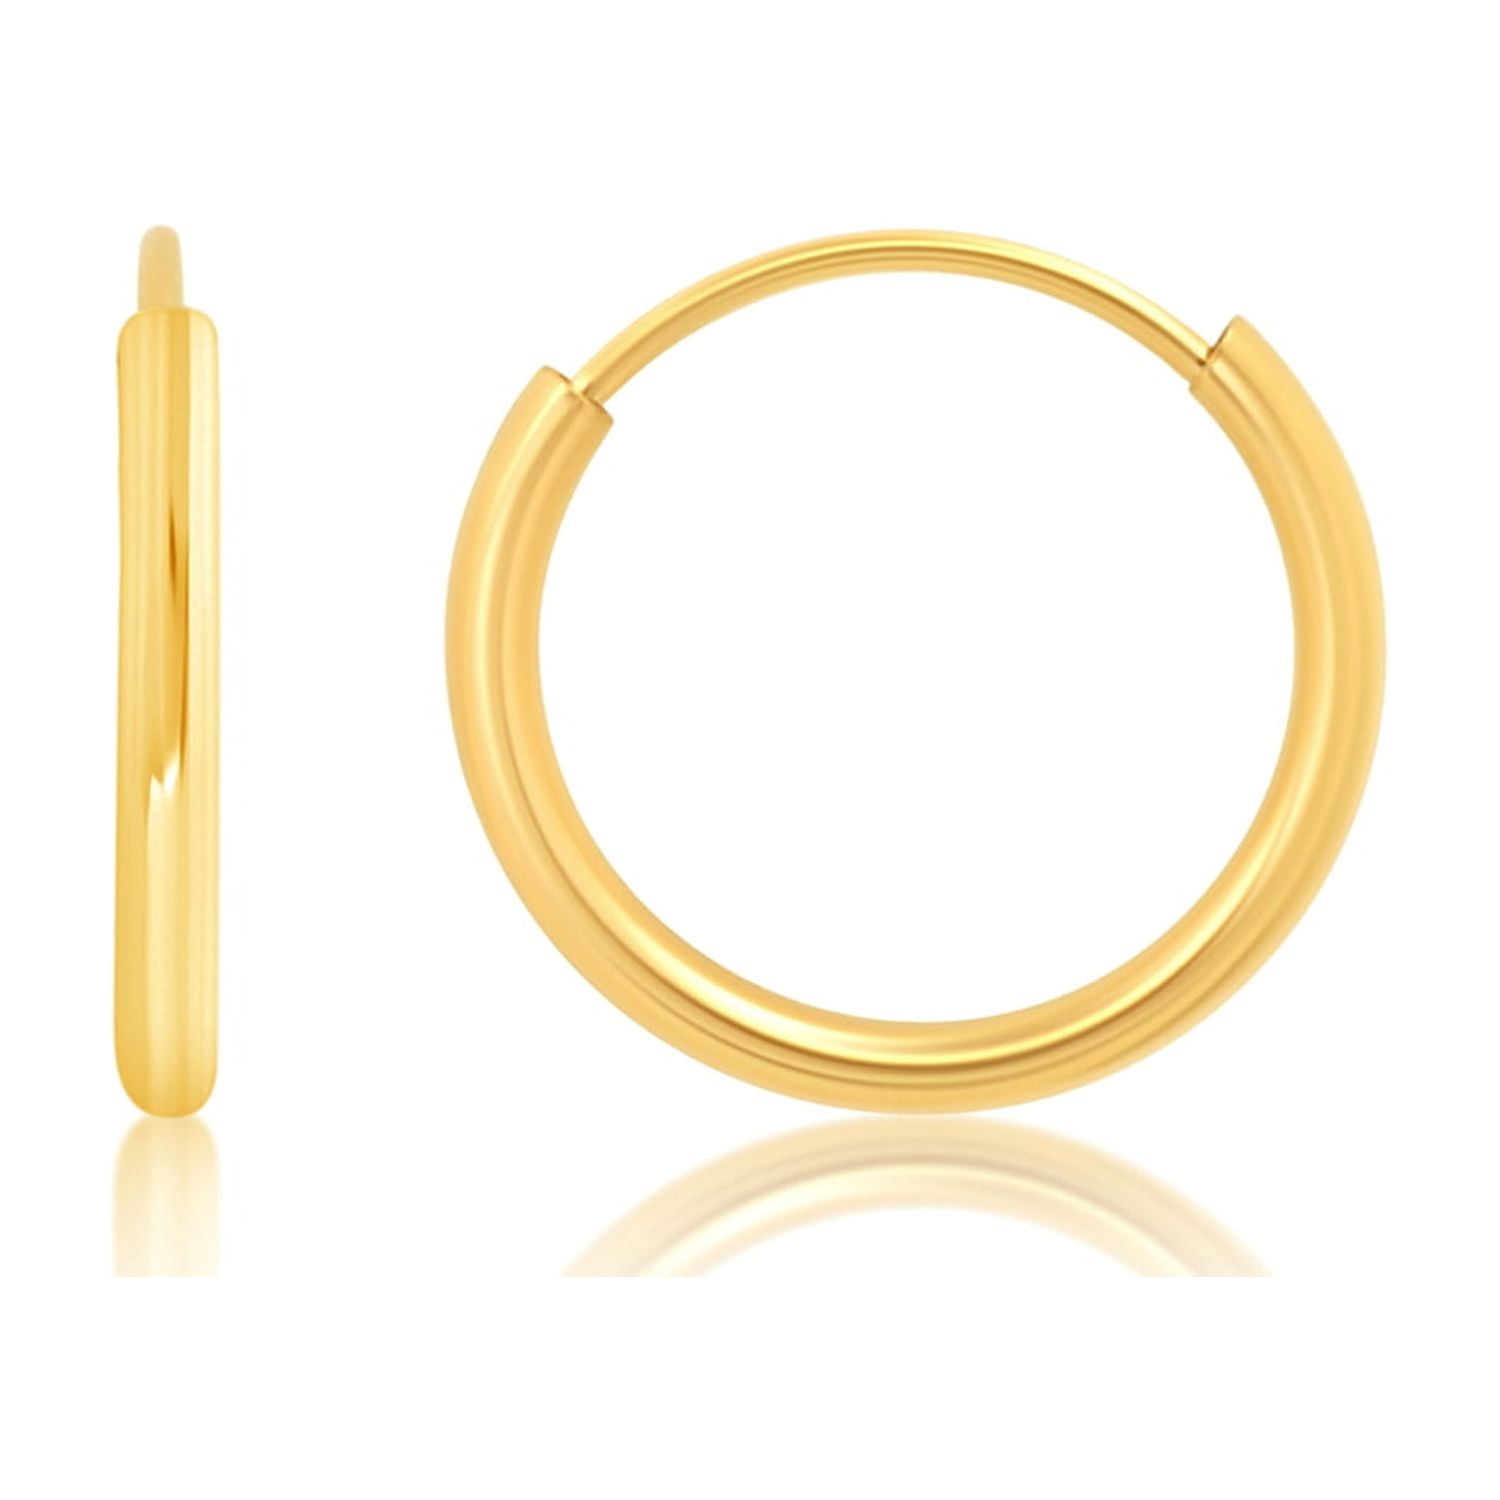 Small Solid 18K Yellow Gold Hoop Earrings Your Choice 8mm 10mm or 12mm in 24 Gauge or 22 Gauge Handmade Hypoallergenic Hoops Sensitive Ears Huggies